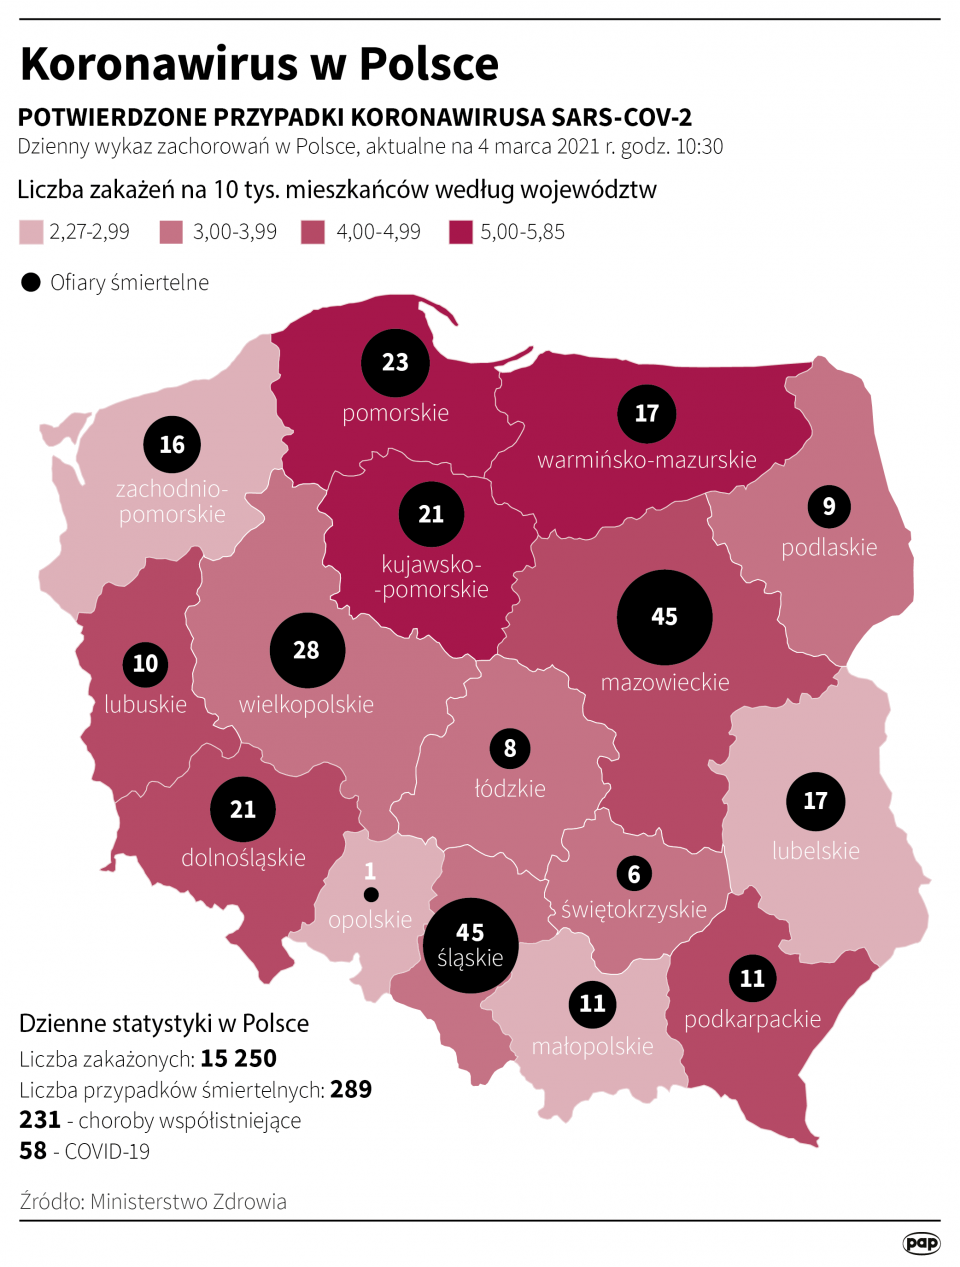 Koronawirus w Polsce stan na 4 marca [autor: Maciej Zieliński, źródło: PAP]